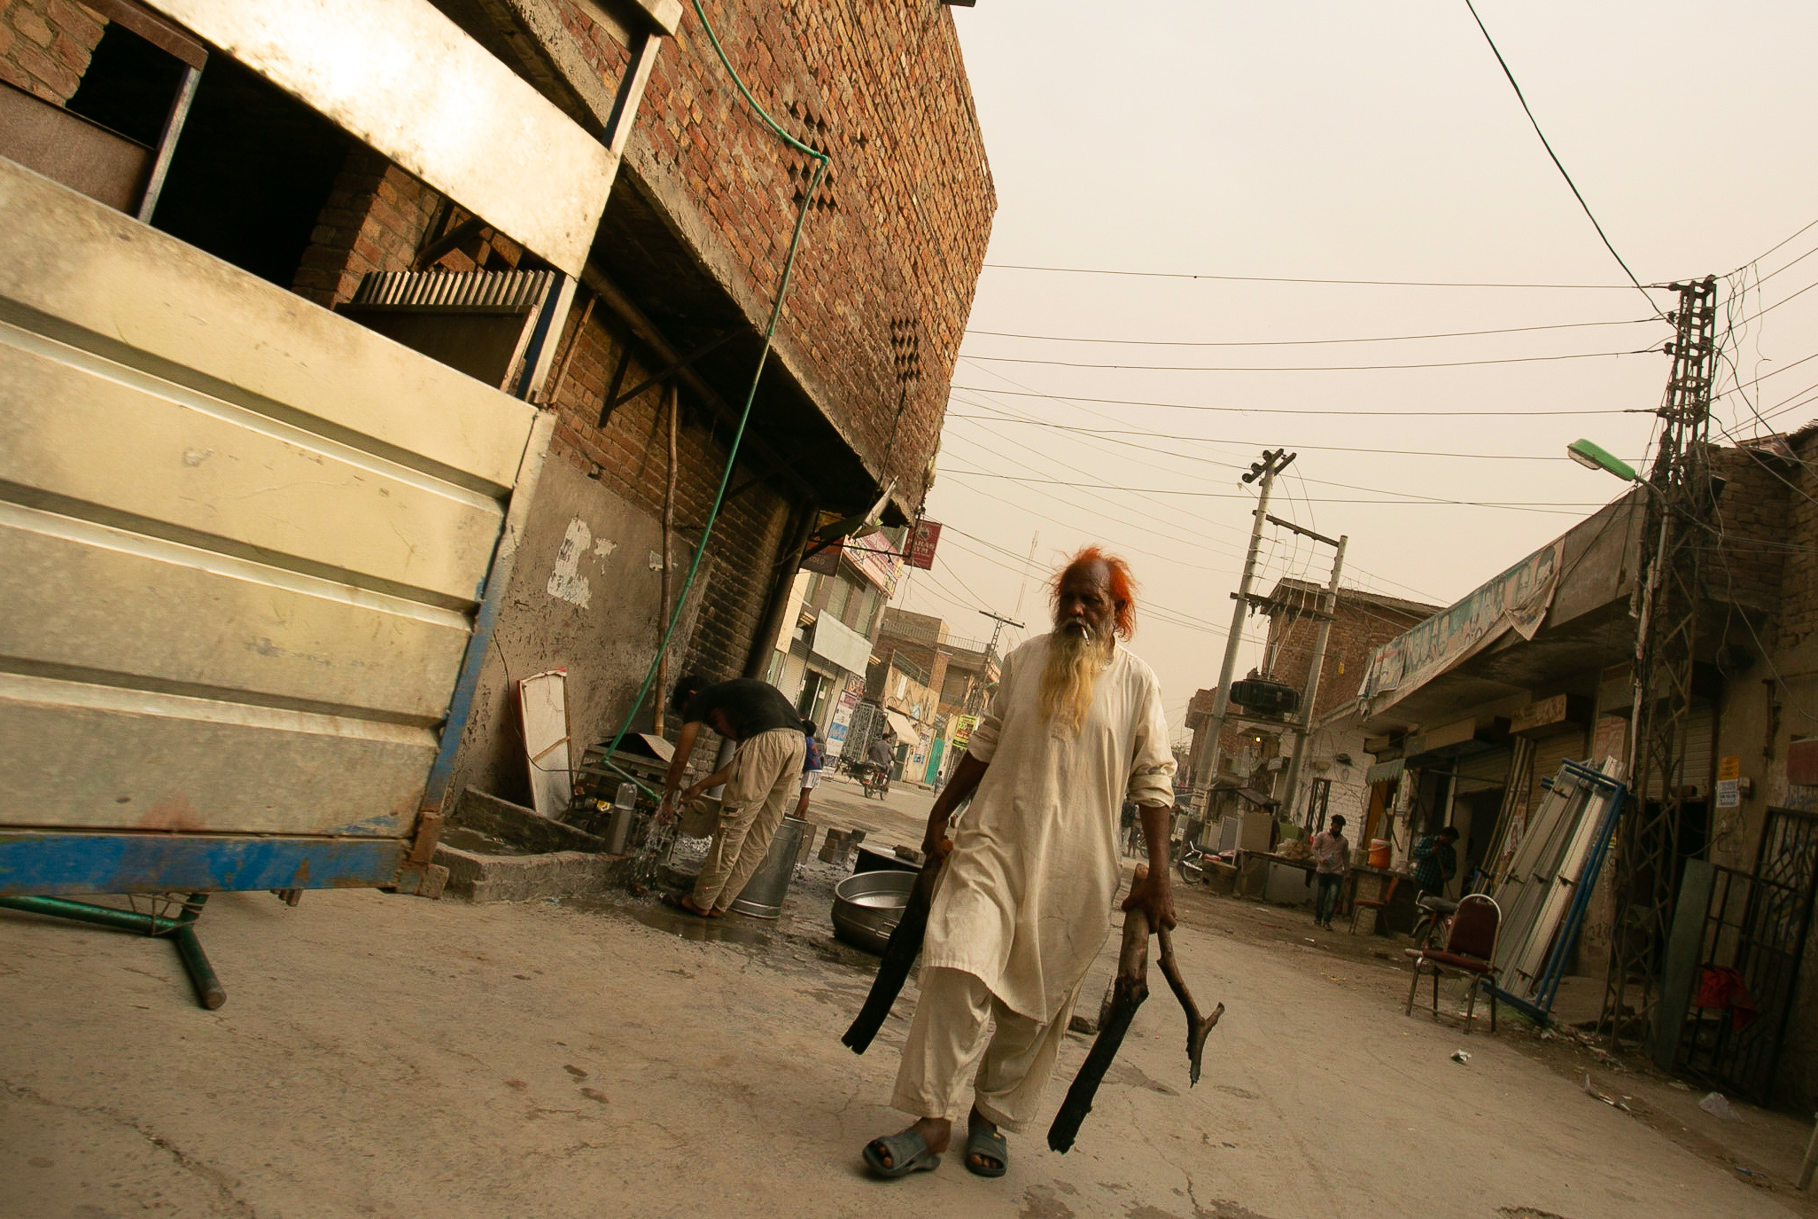 A street scene in Lahore, Pakistan.